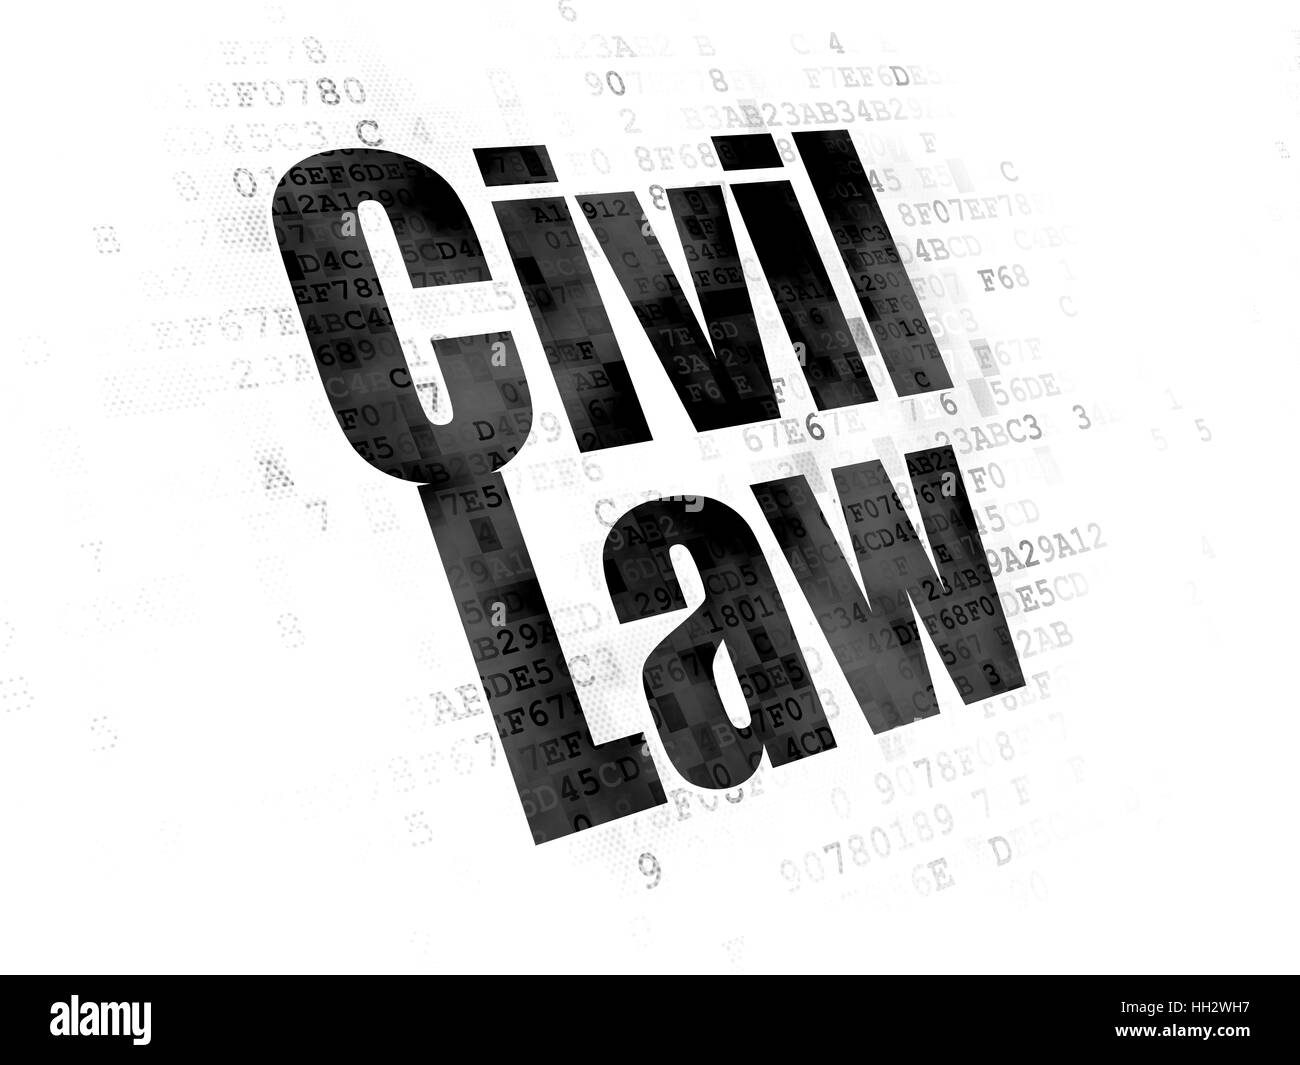 Concept de droit : Droit civil sur la base numérique Banque D'Images